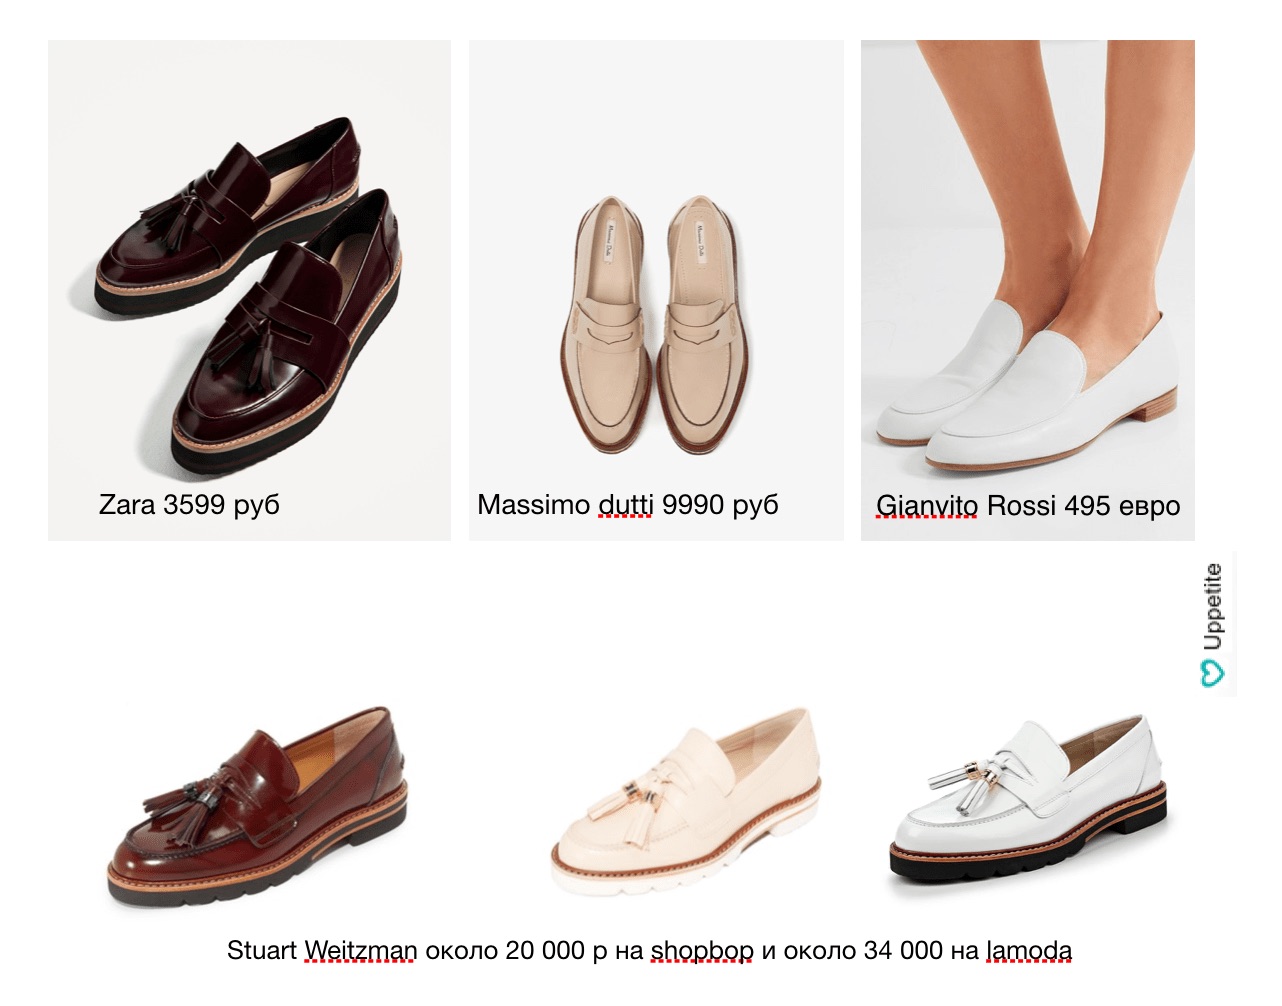 Topánky pre malé ženy: ktorú si vybrať a kde kúpiť v závislosti od sezóny